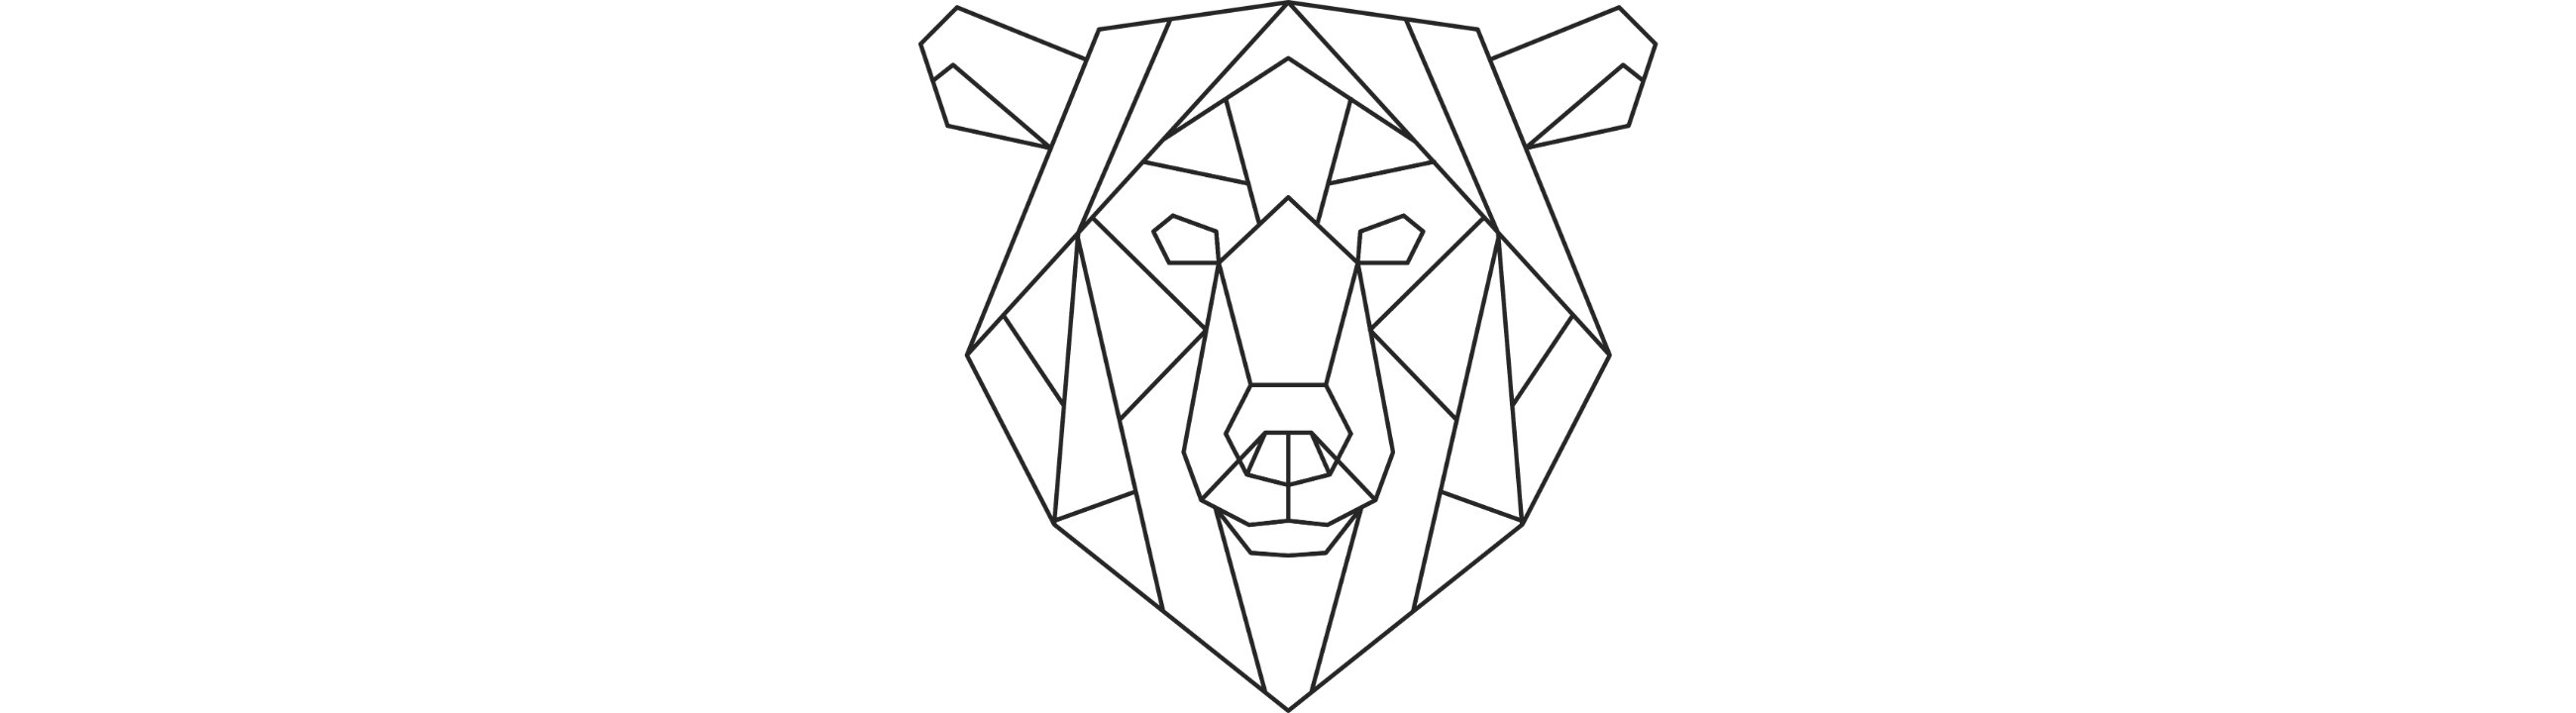 Bär Polygon Zeichnung